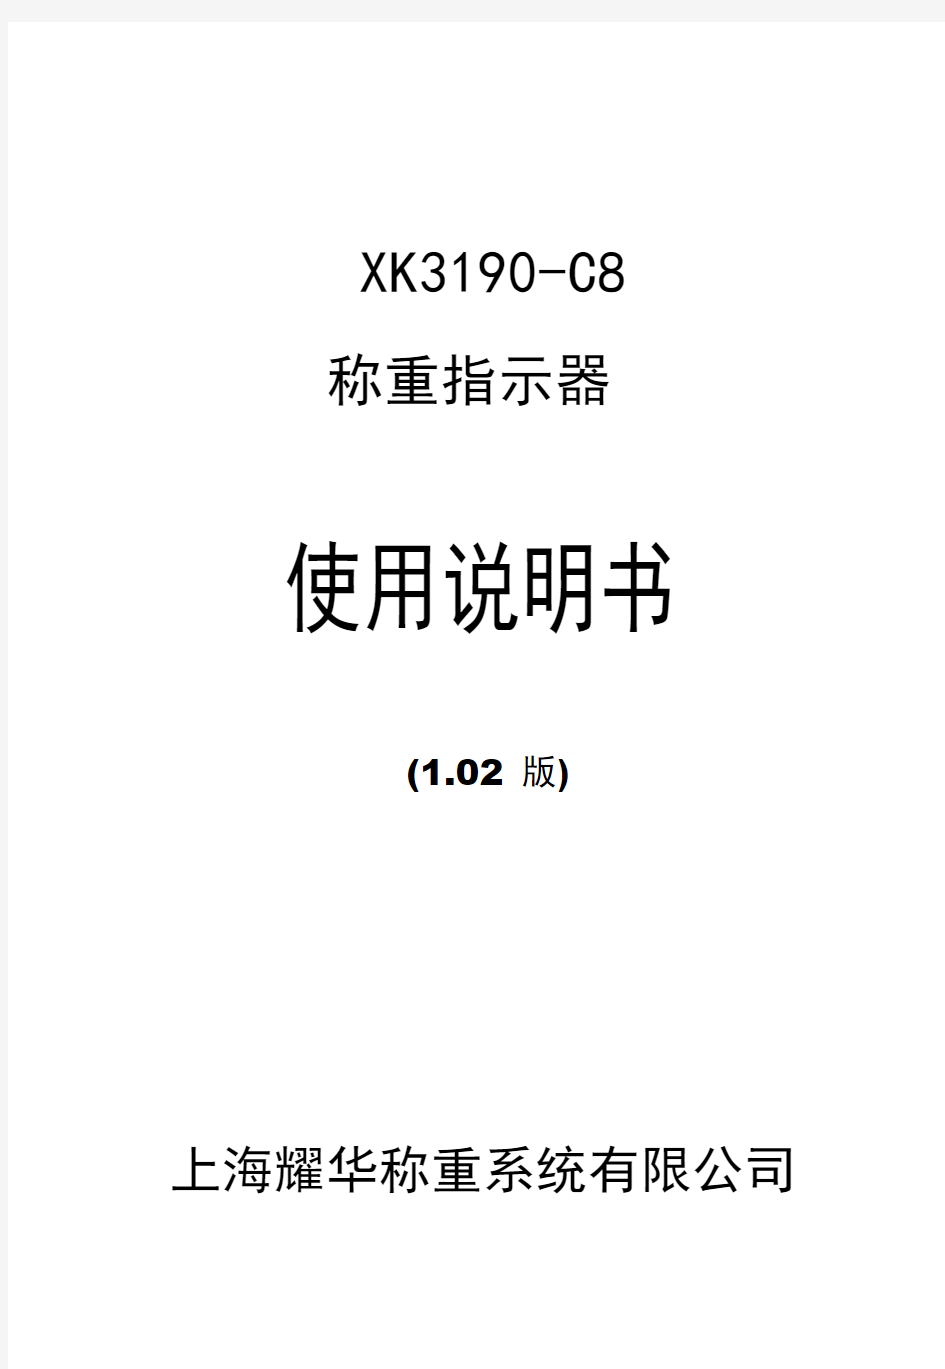 xk3190-c8称重显示器用户手册详解